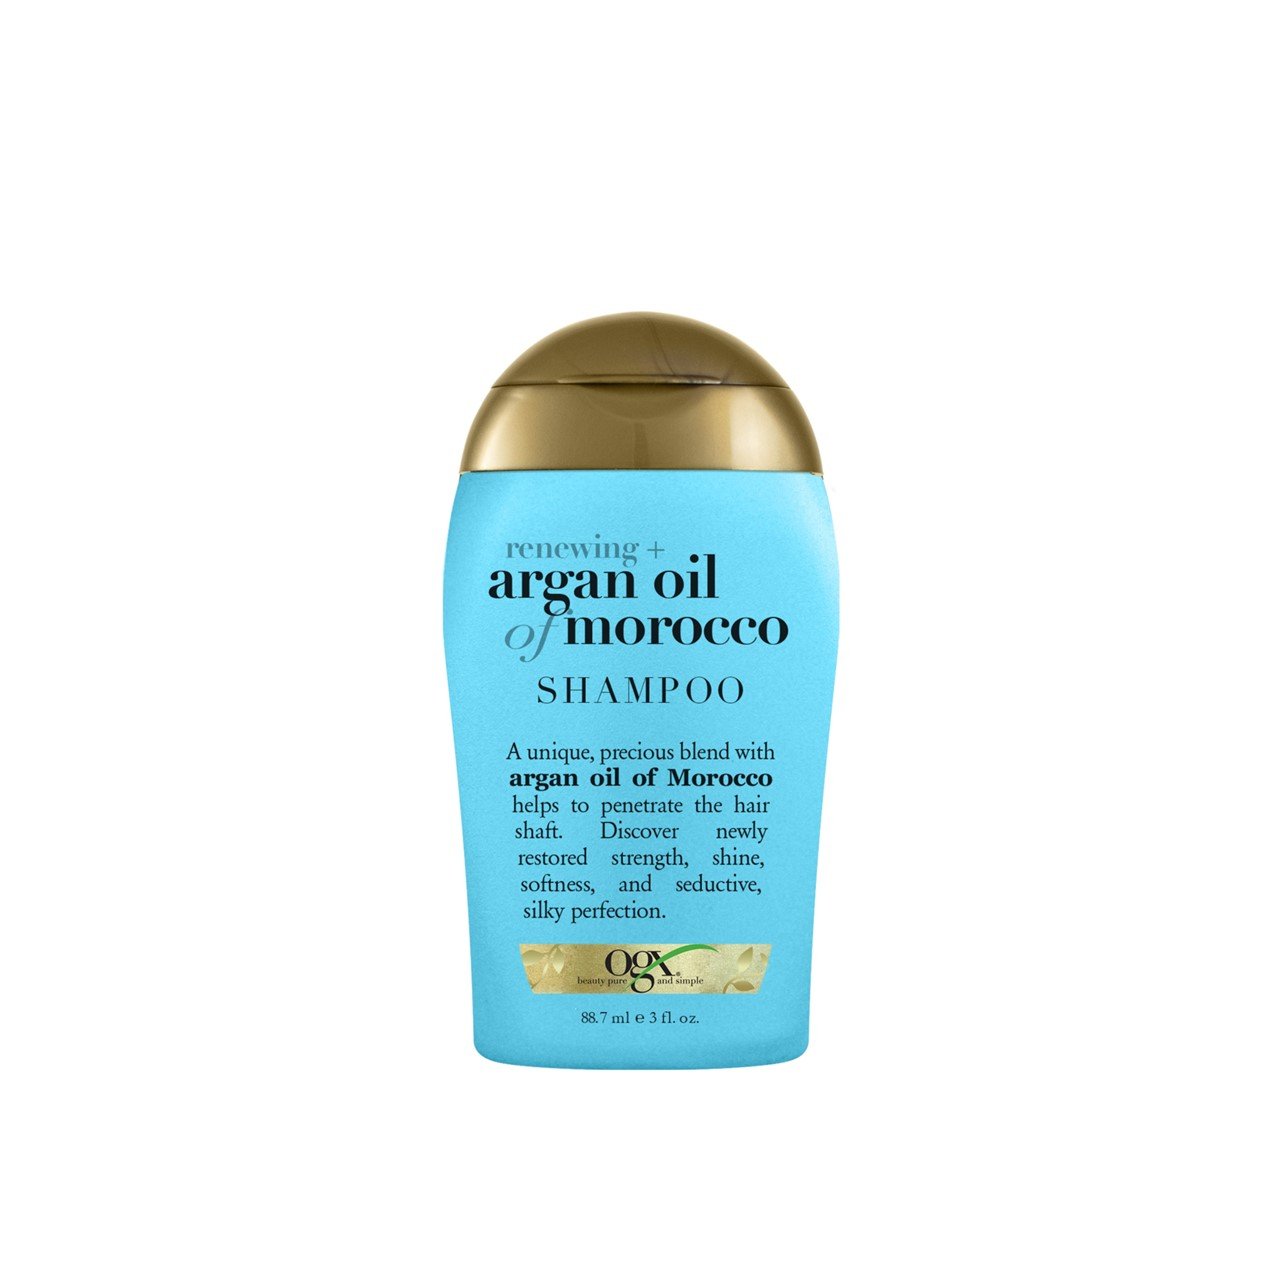 OGX Renewing + Argan Oil of Morocco Shampoo 88.7ml